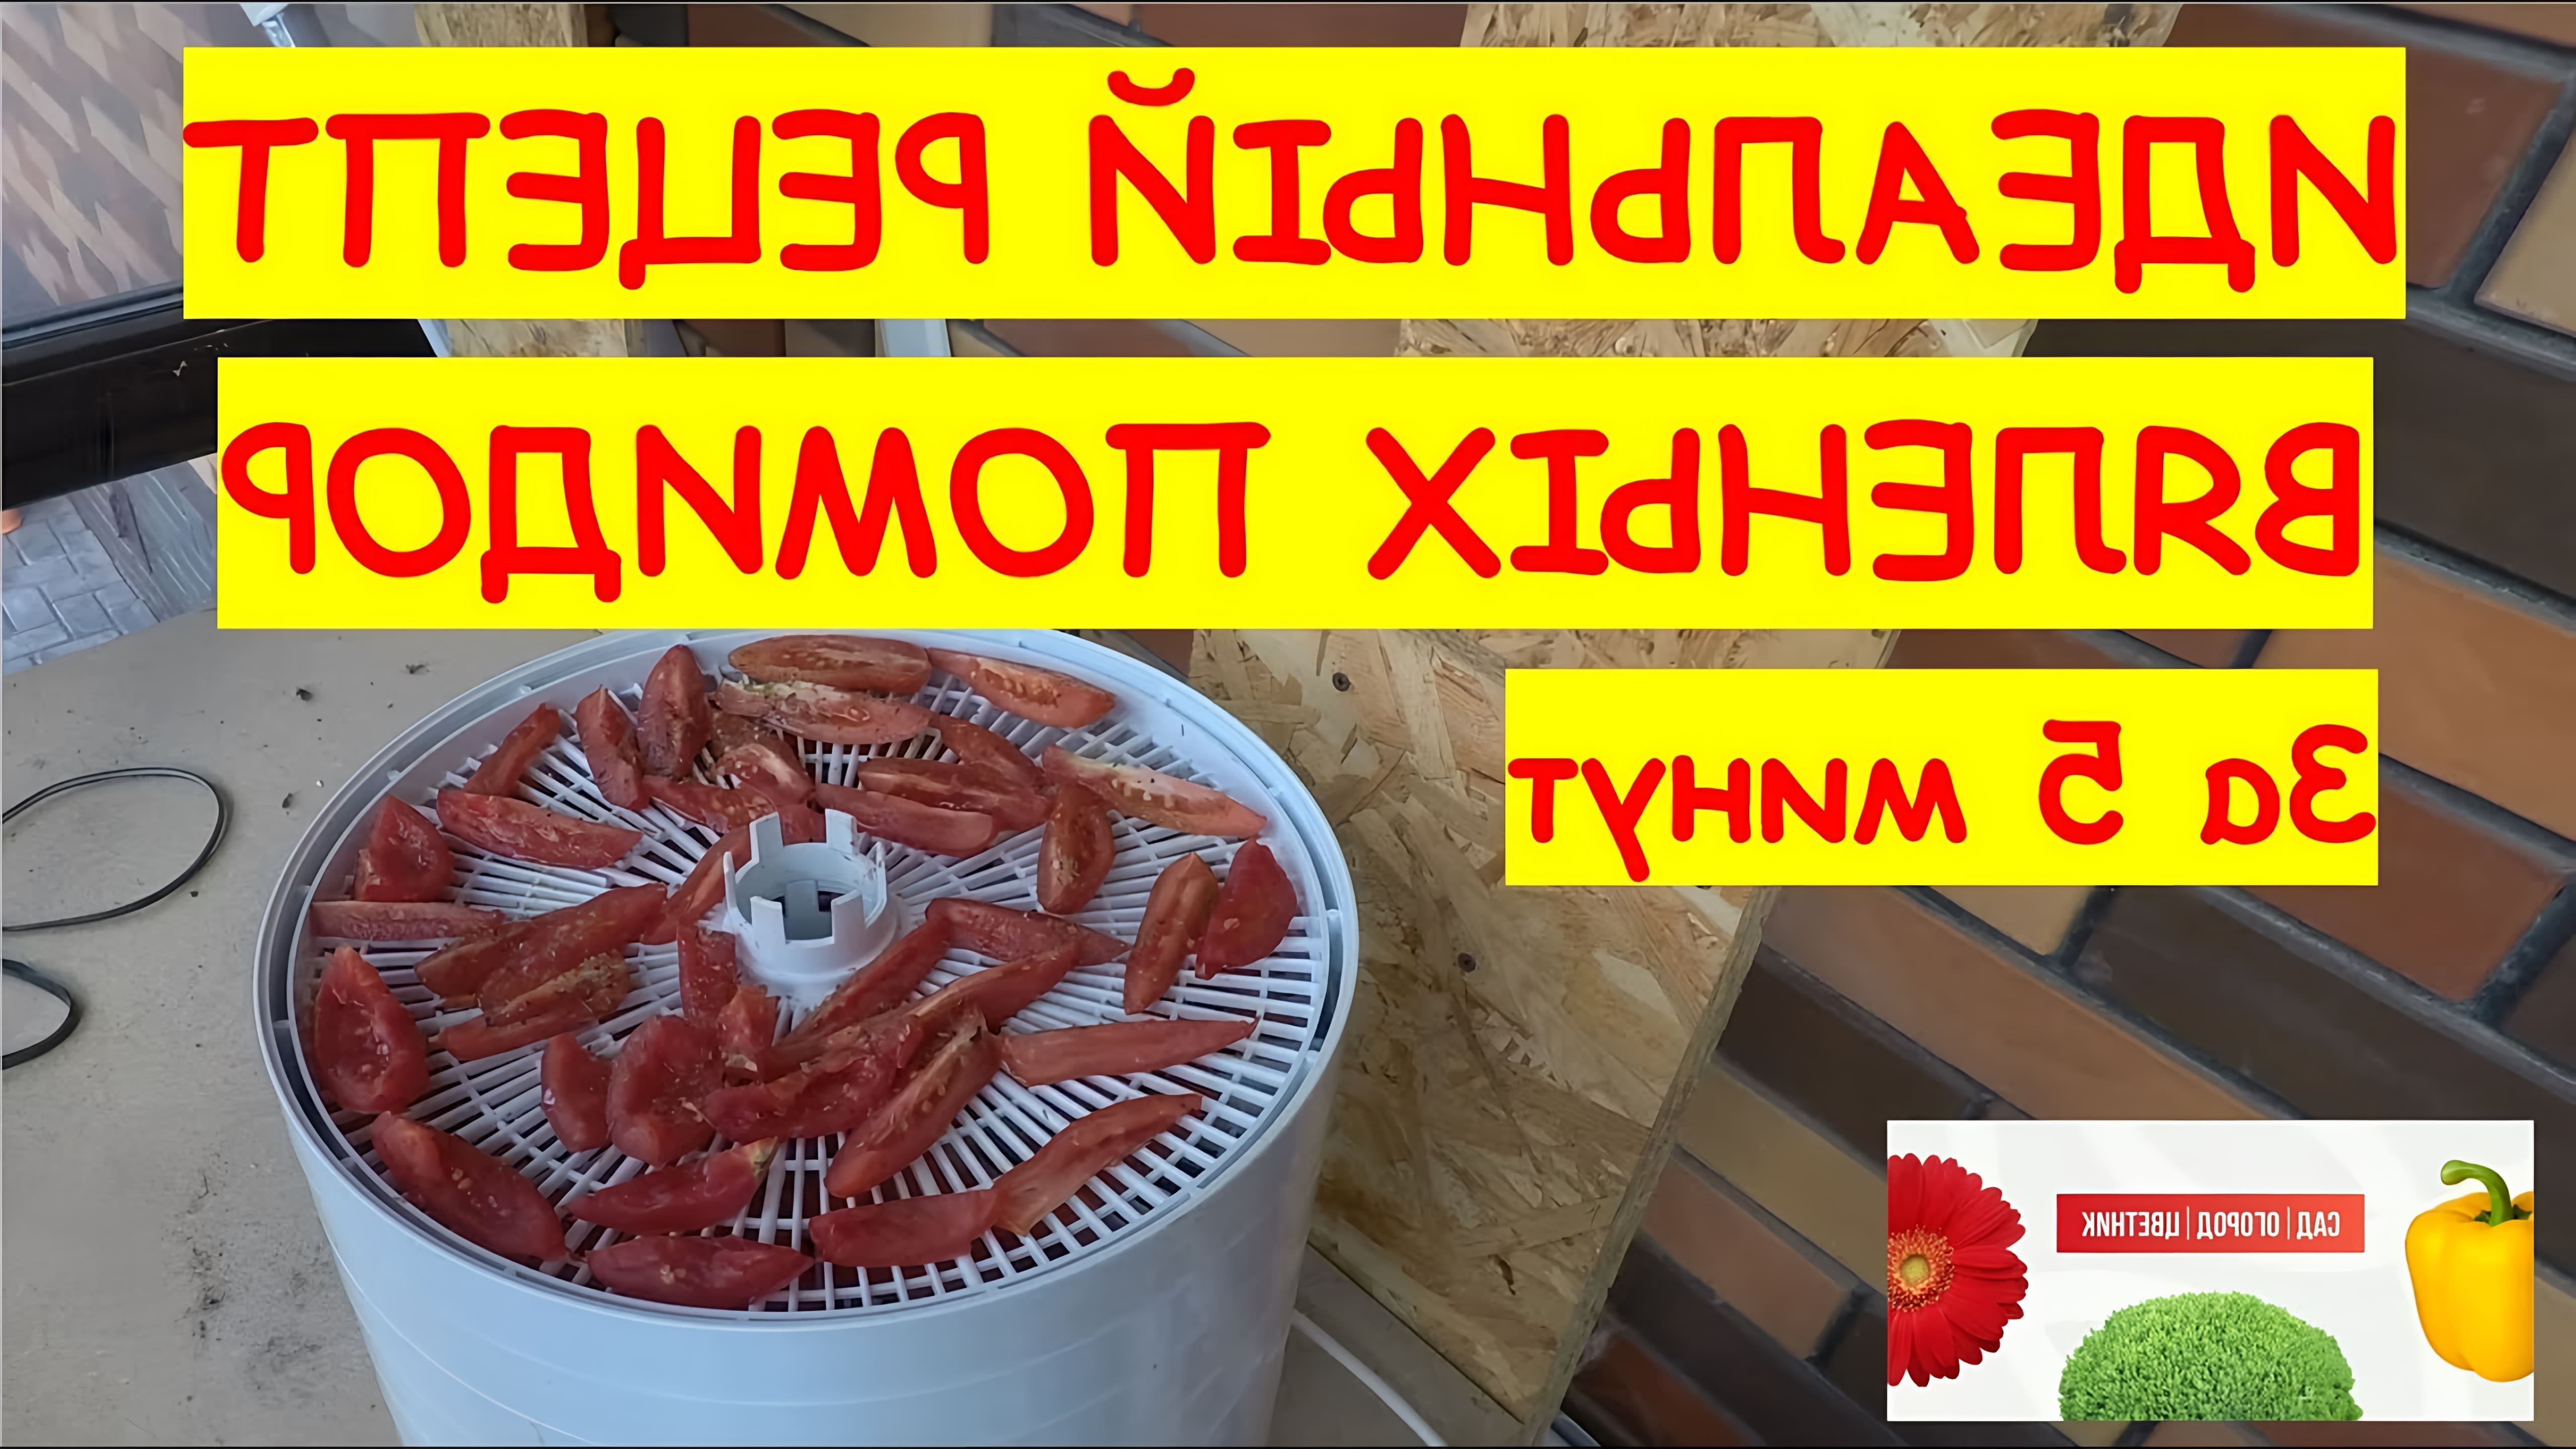 В этом видео демонстрируется процесс приготовления вяленых помидоров в сушилке